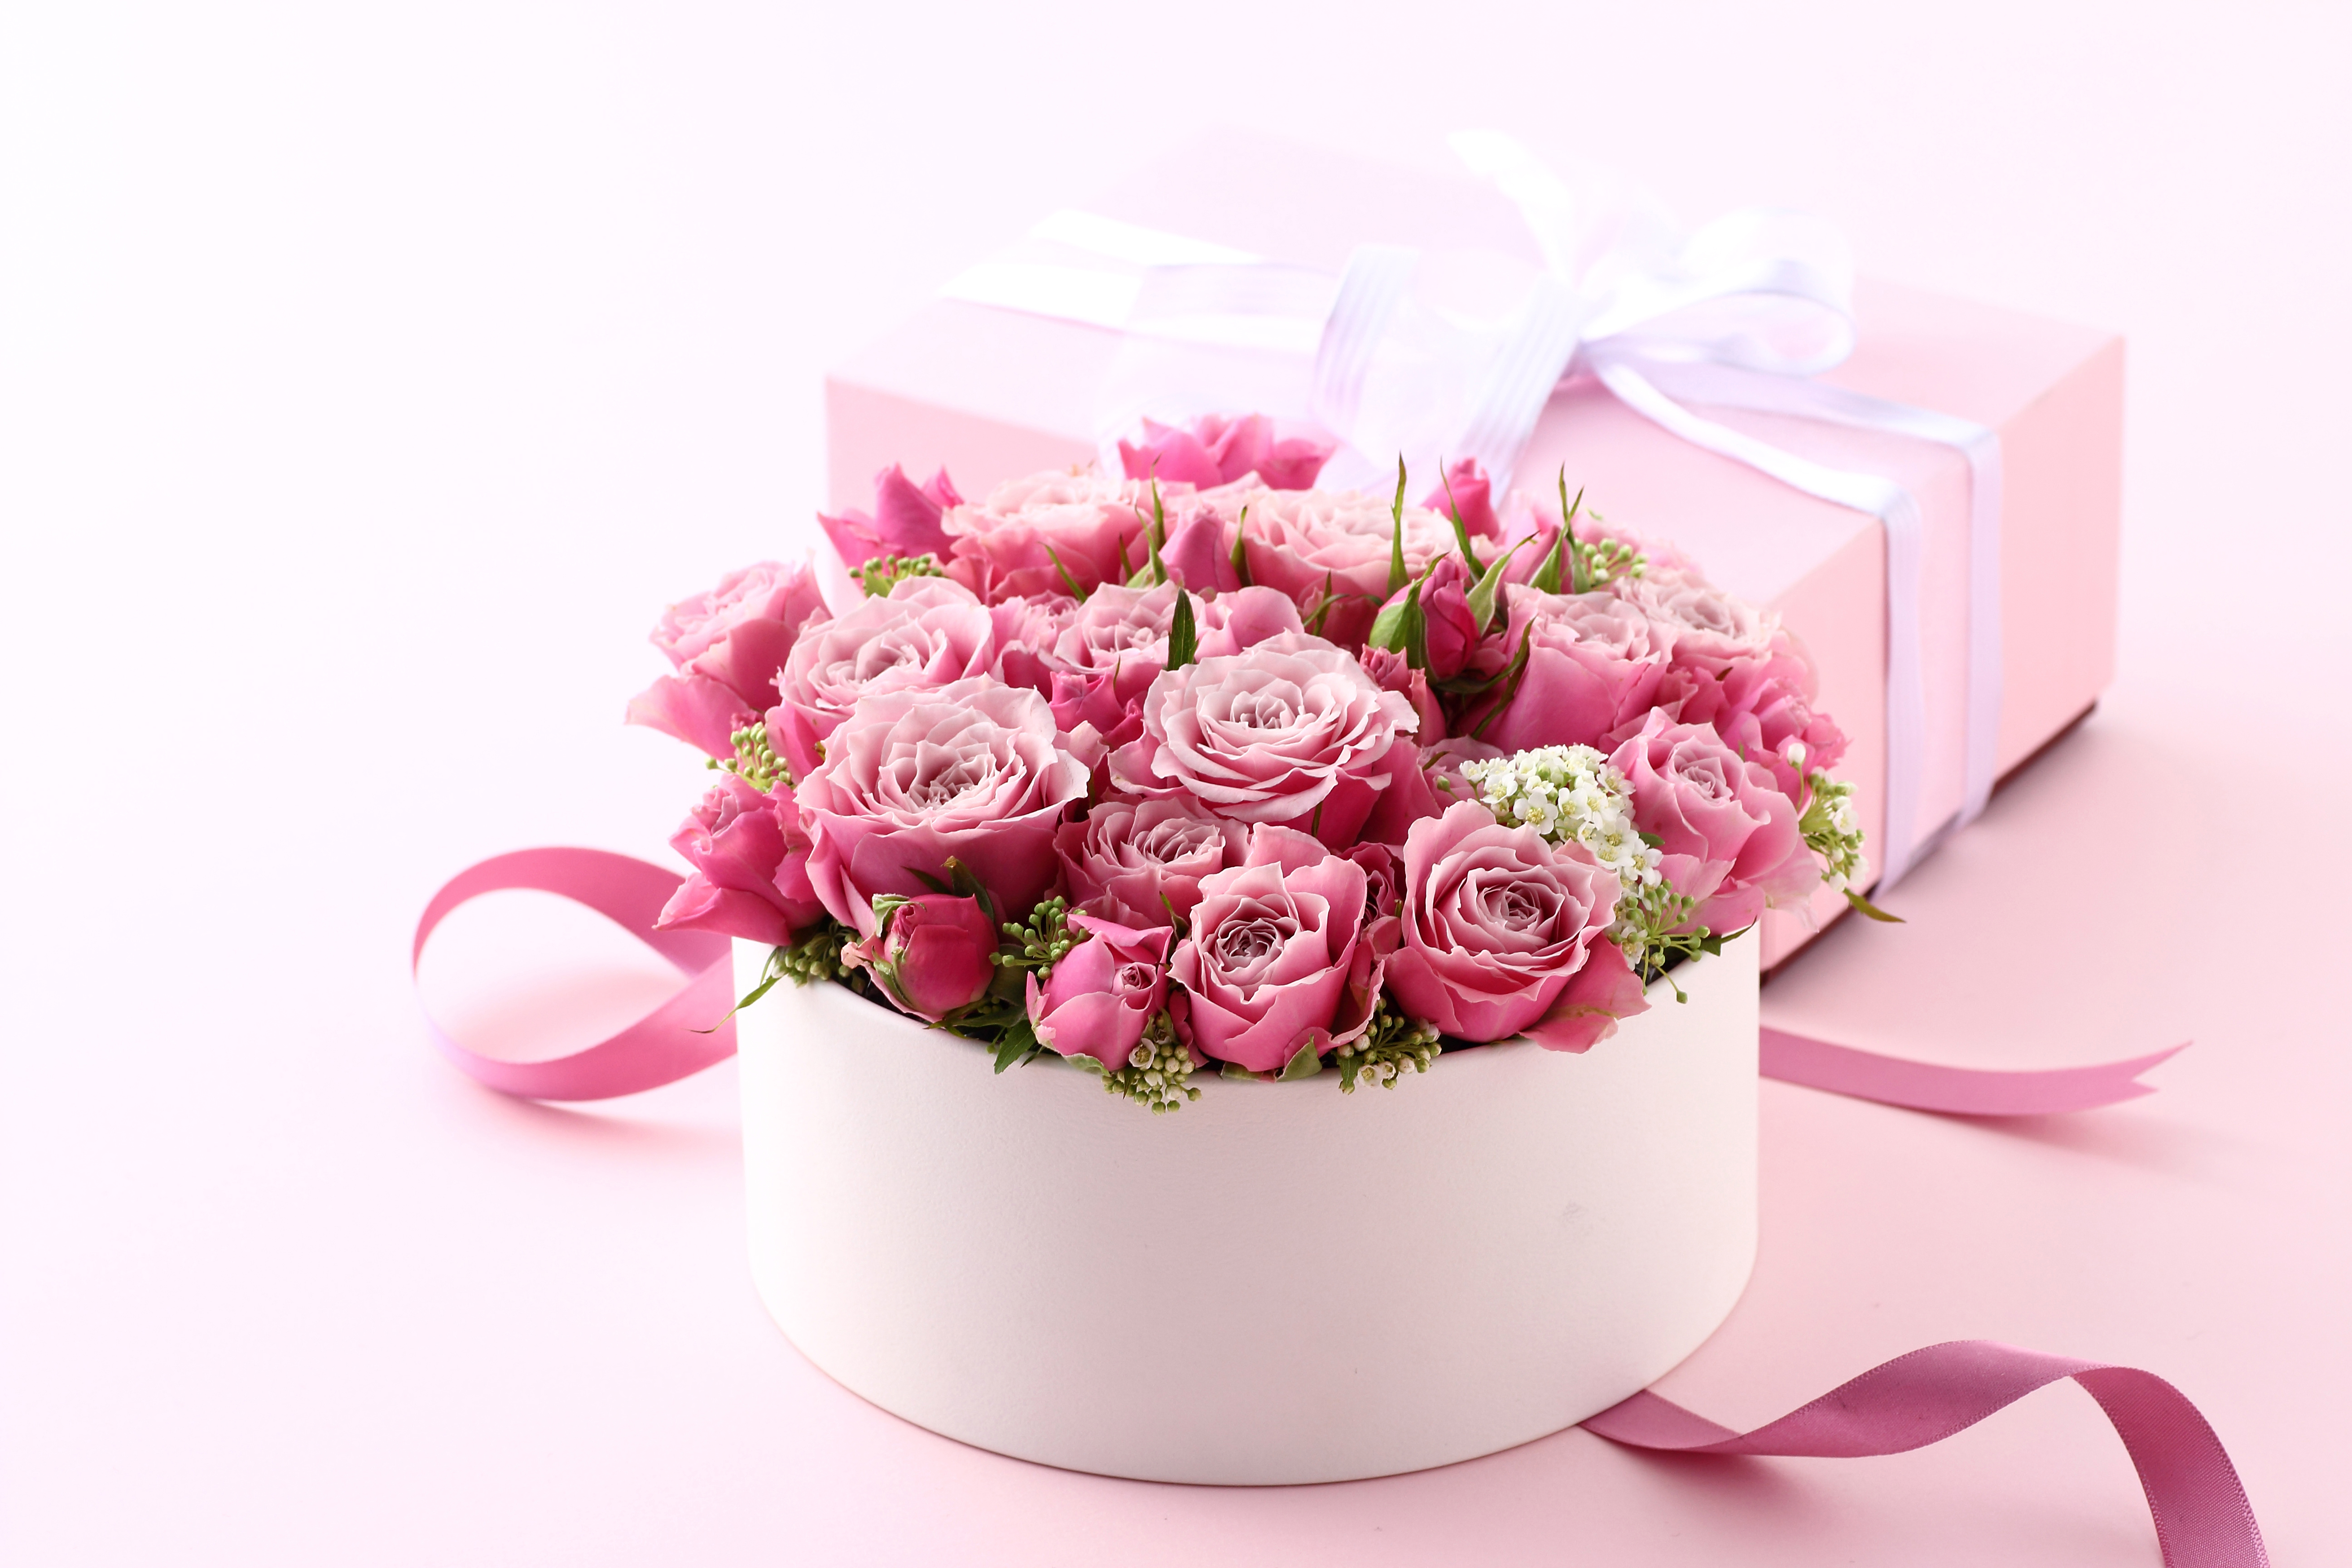 779341 скачать обои праздничные, день святого валентина, коробка, подарки, розовый цветок, пинк, лента, роза - заставки и картинки бесплатно